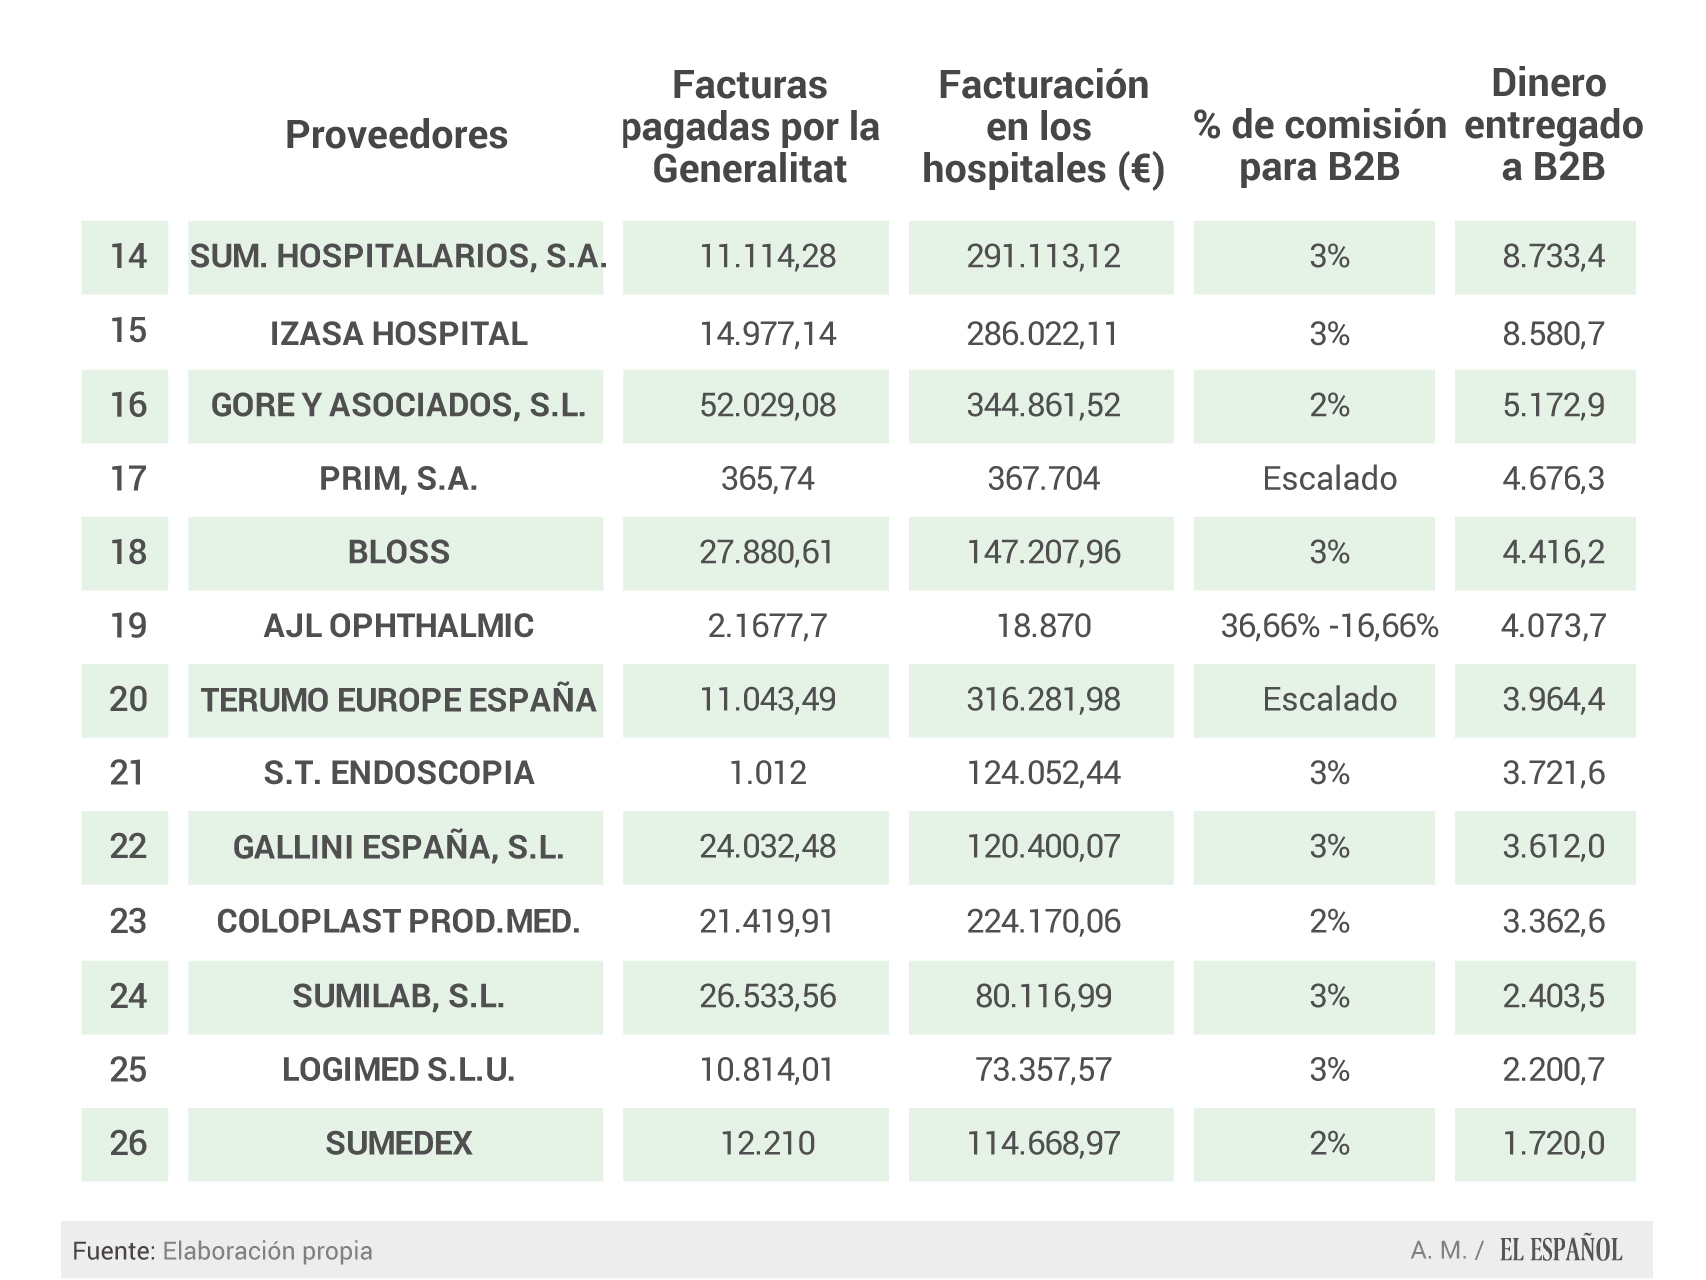 Más datos sobre la relación entre proveedores y Ribera Salud.